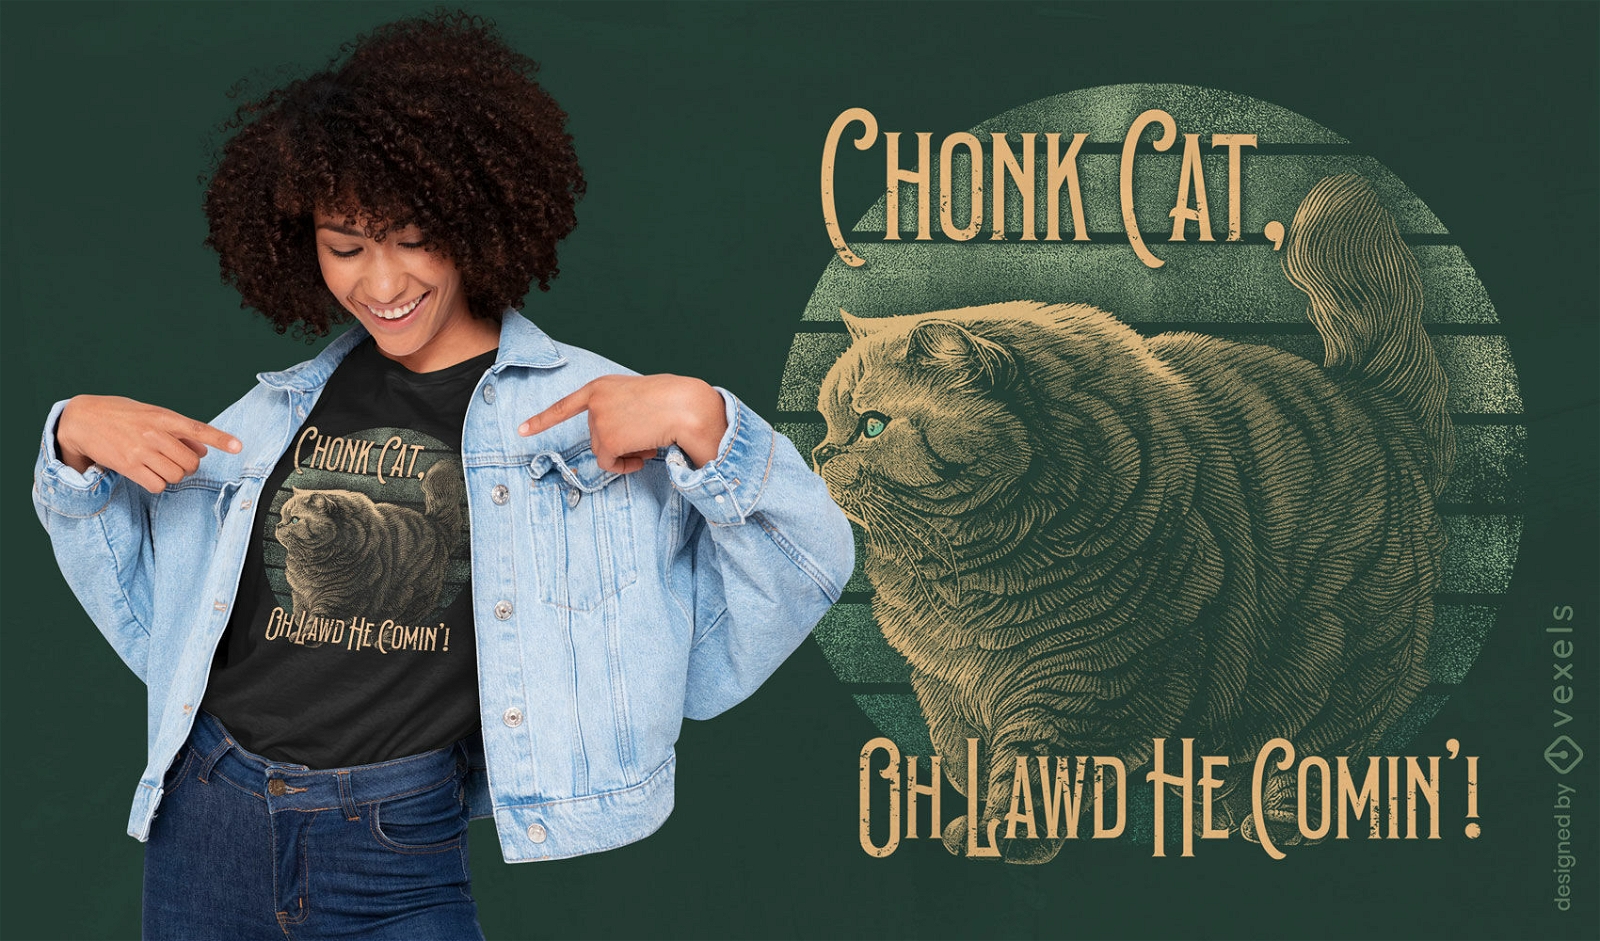 Dise?o de camiseta de gato chonk.